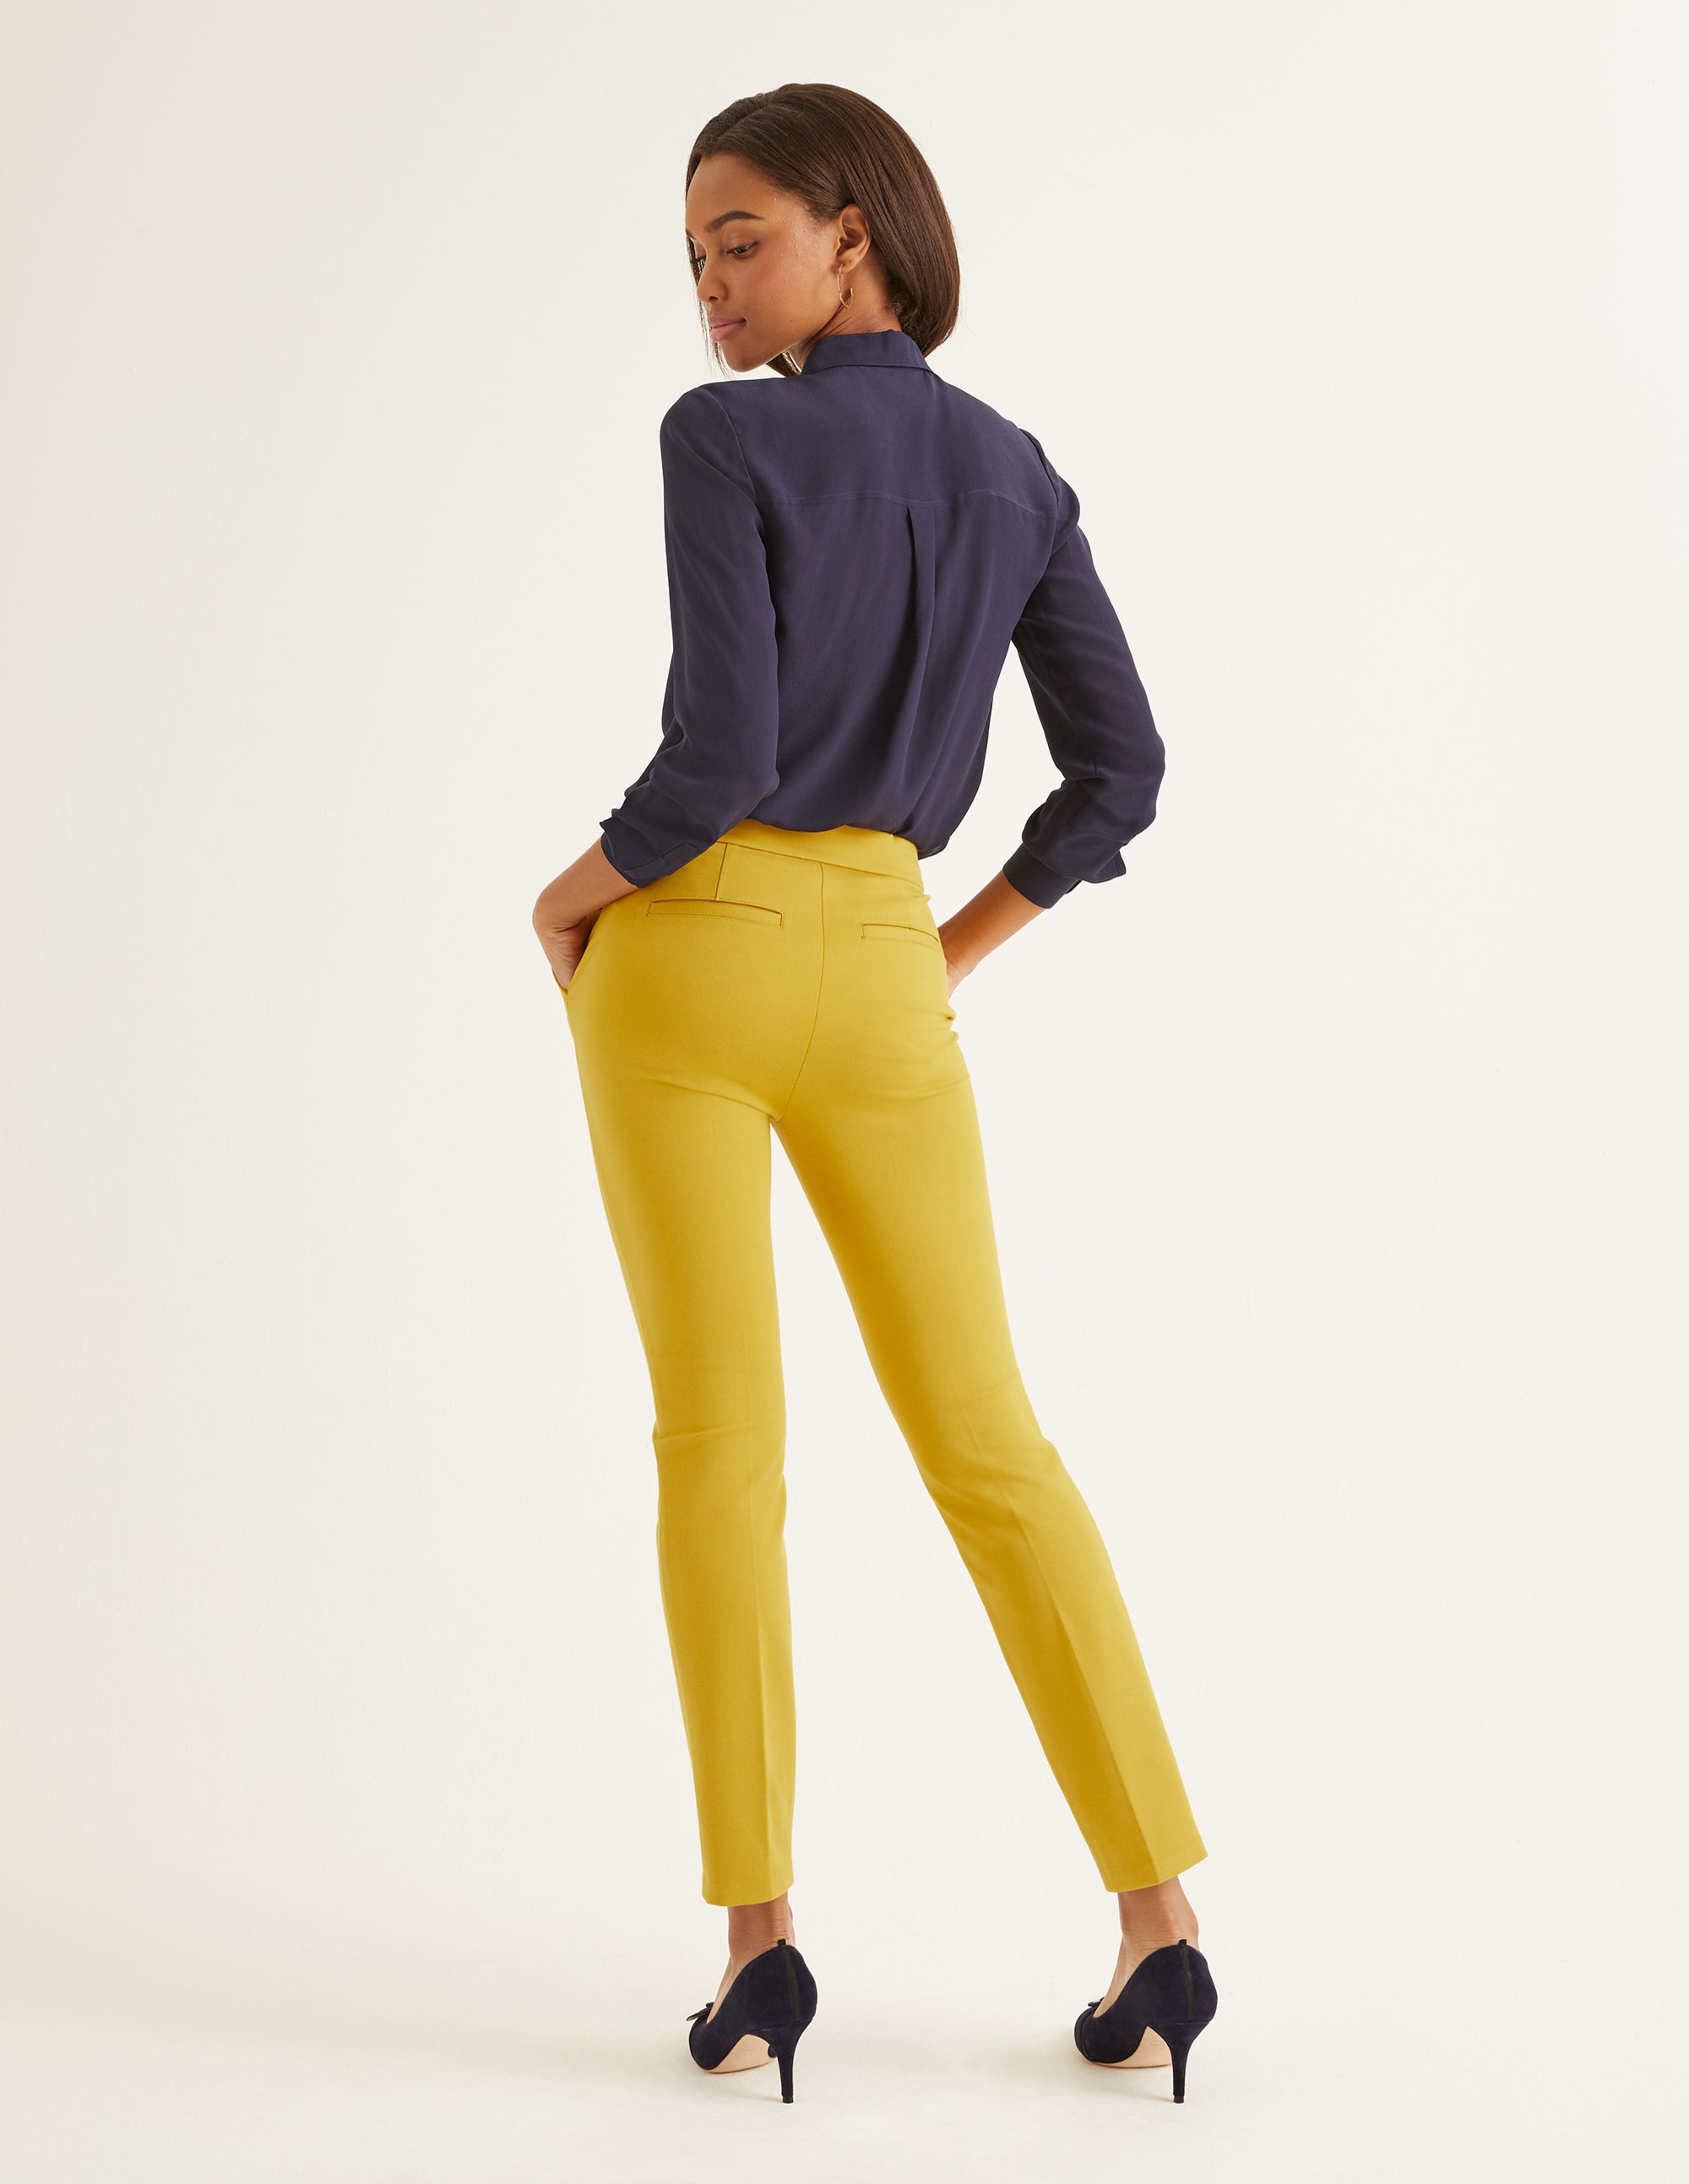 Hampshire 7/8 Trousers - Saffron | Boden UK